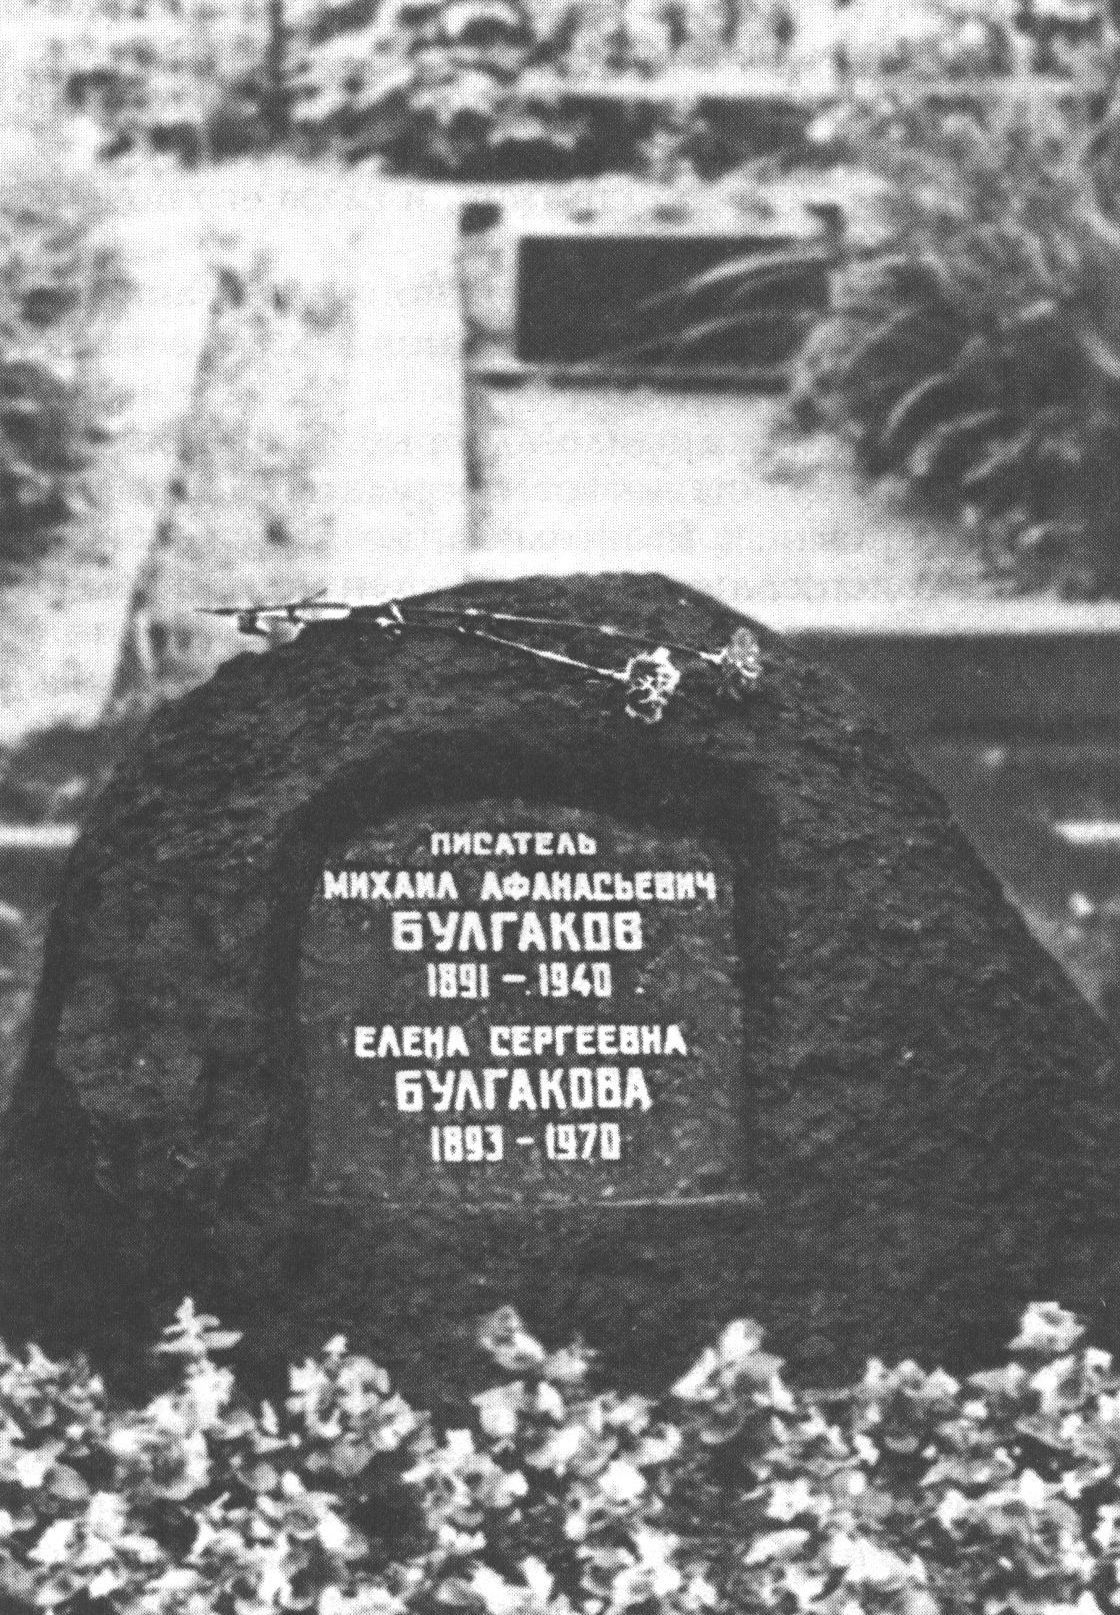 Могила Михаила Афанасьевича Булгакова на Новодевичьем кладбище. В 1970 году рядом похоронили Елену Сергеевну Булгакову